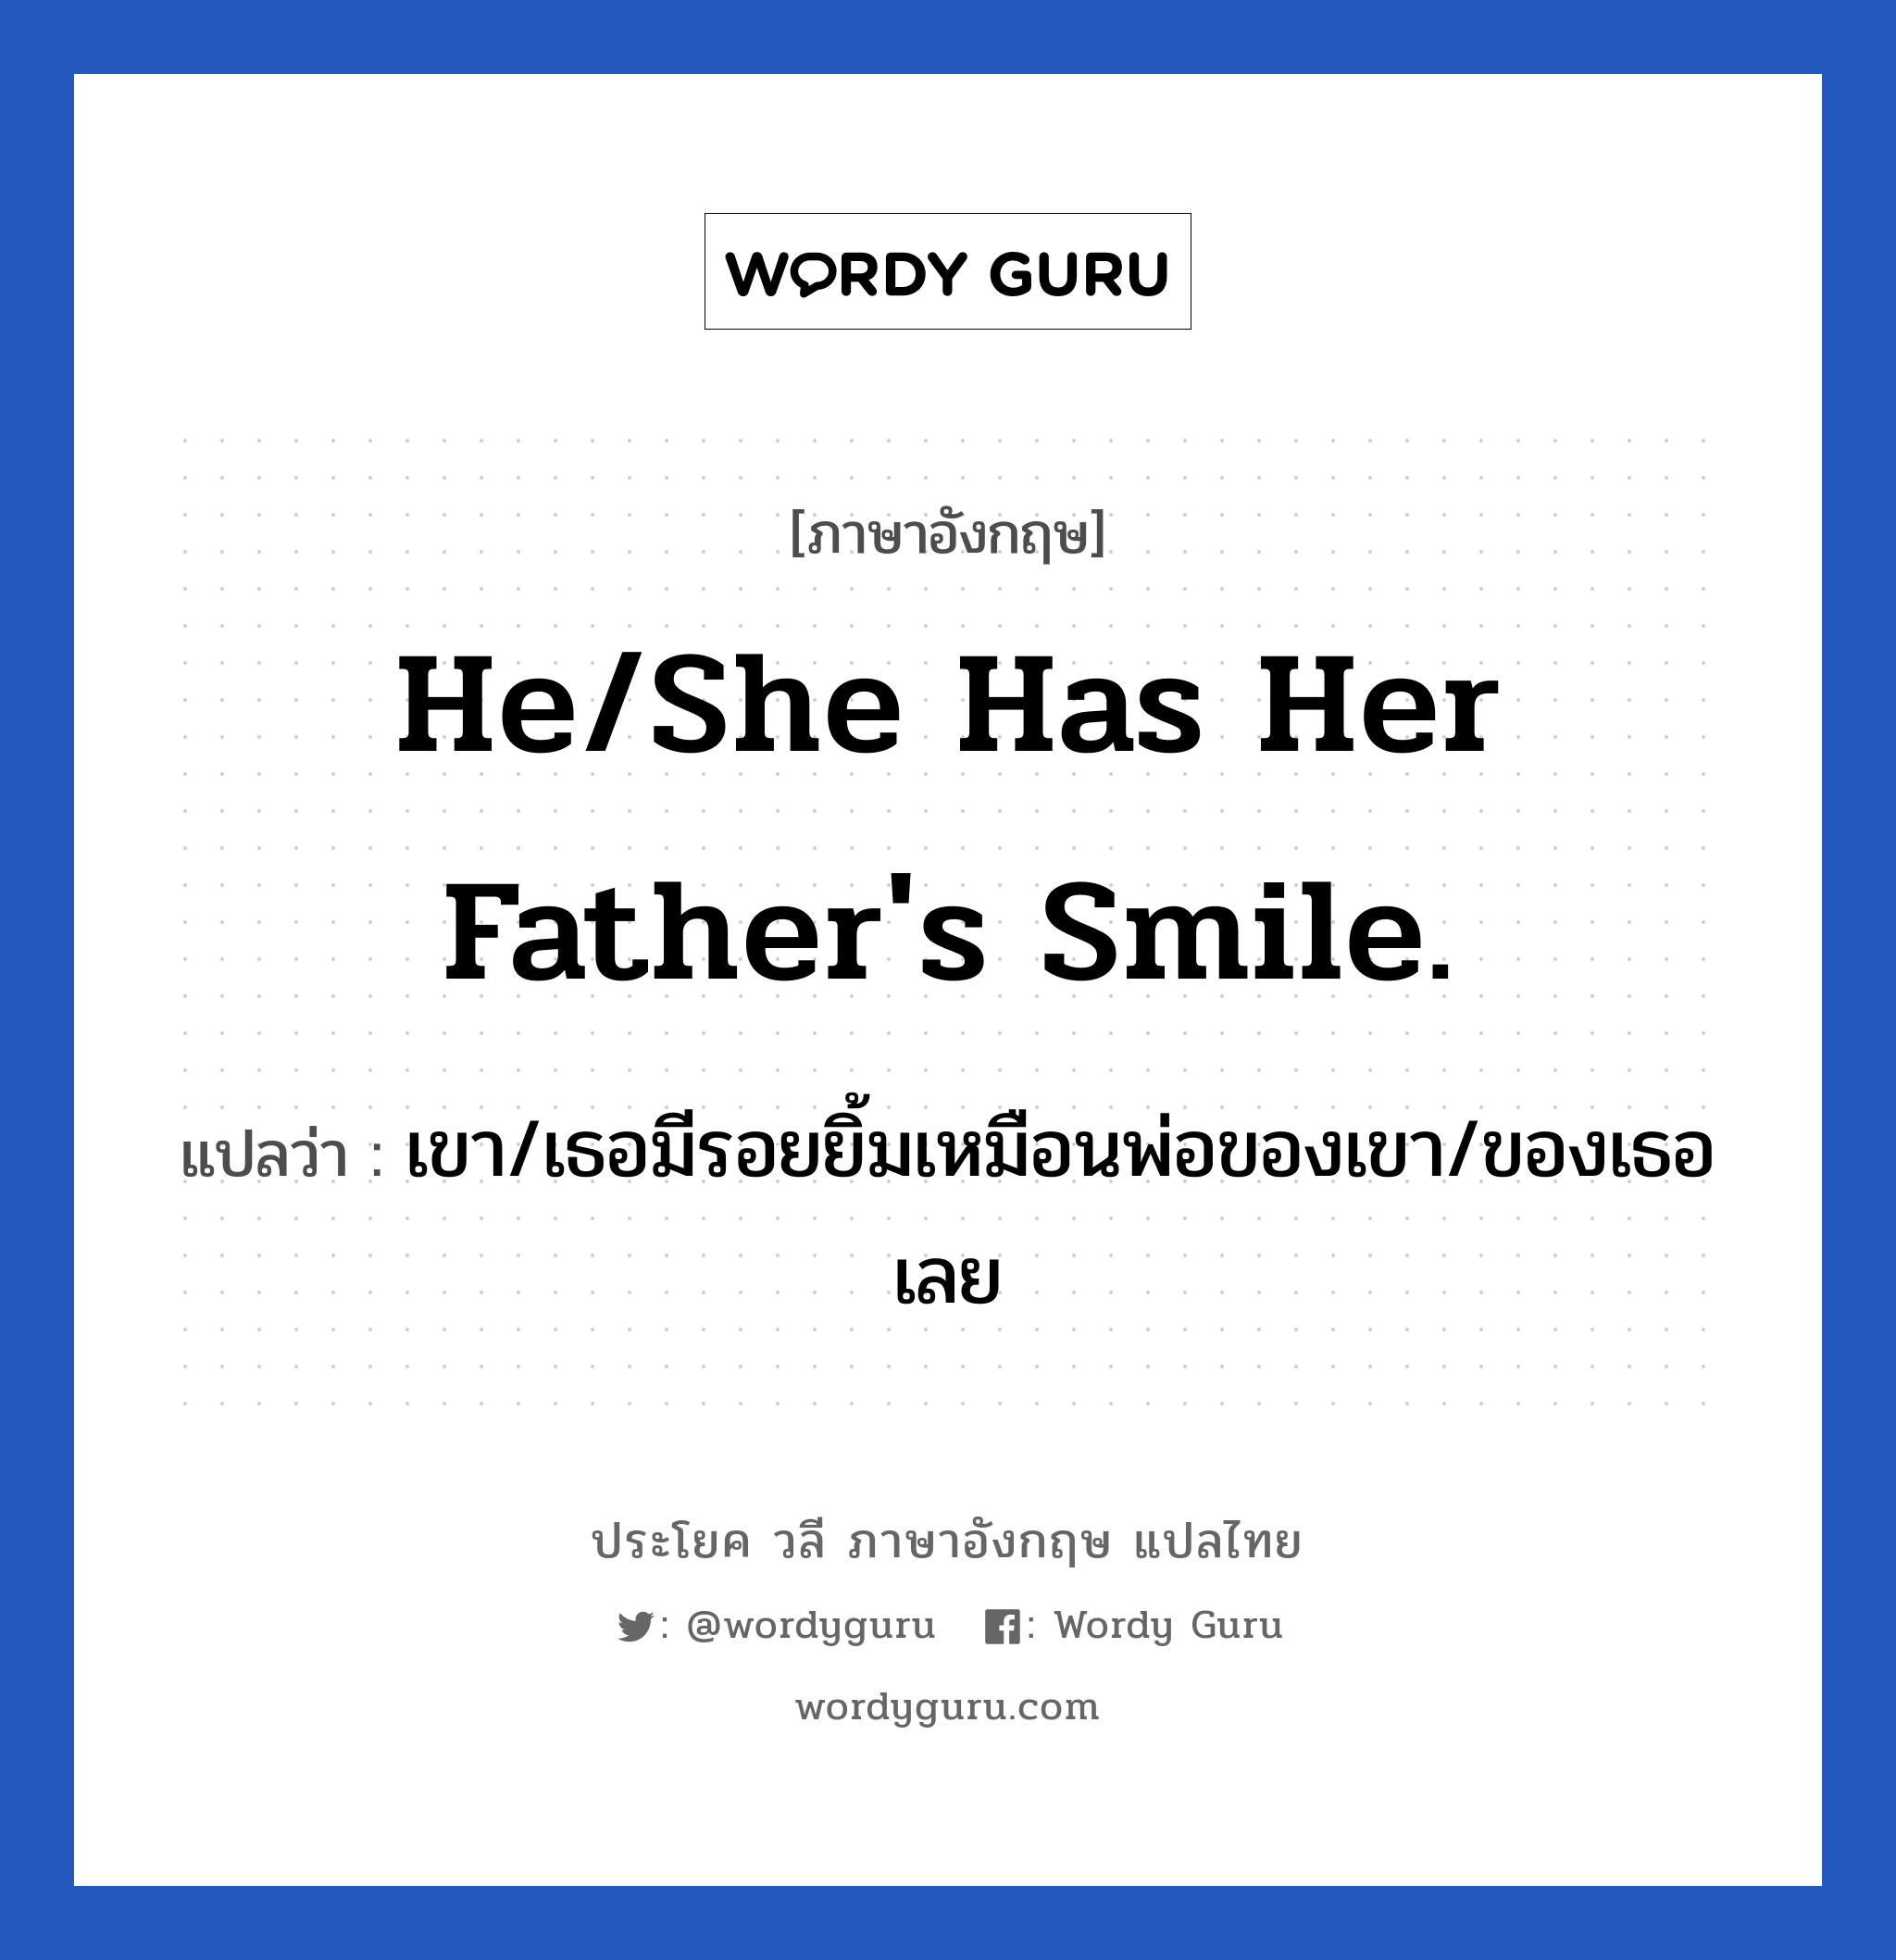 He/She has her father's smile. แปลว่า?, วลีภาษาอังกฤษ He/She has her father's smile. แปลว่า เขา/เธอมีรอยยิ้มเหมือนพ่อของเขา/ของเธอเลย